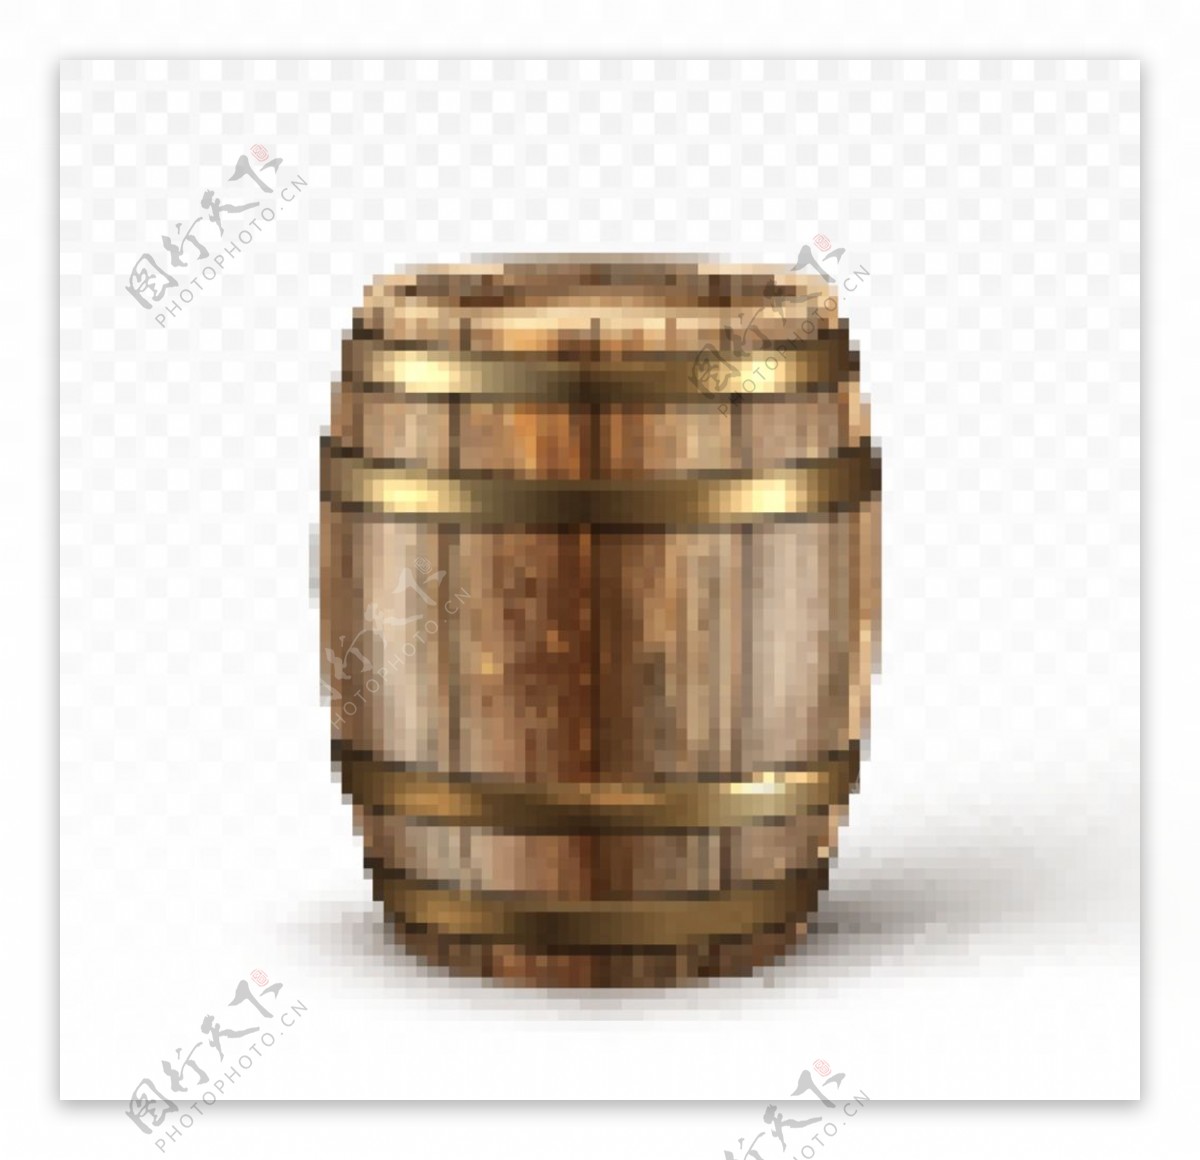 木酒桶